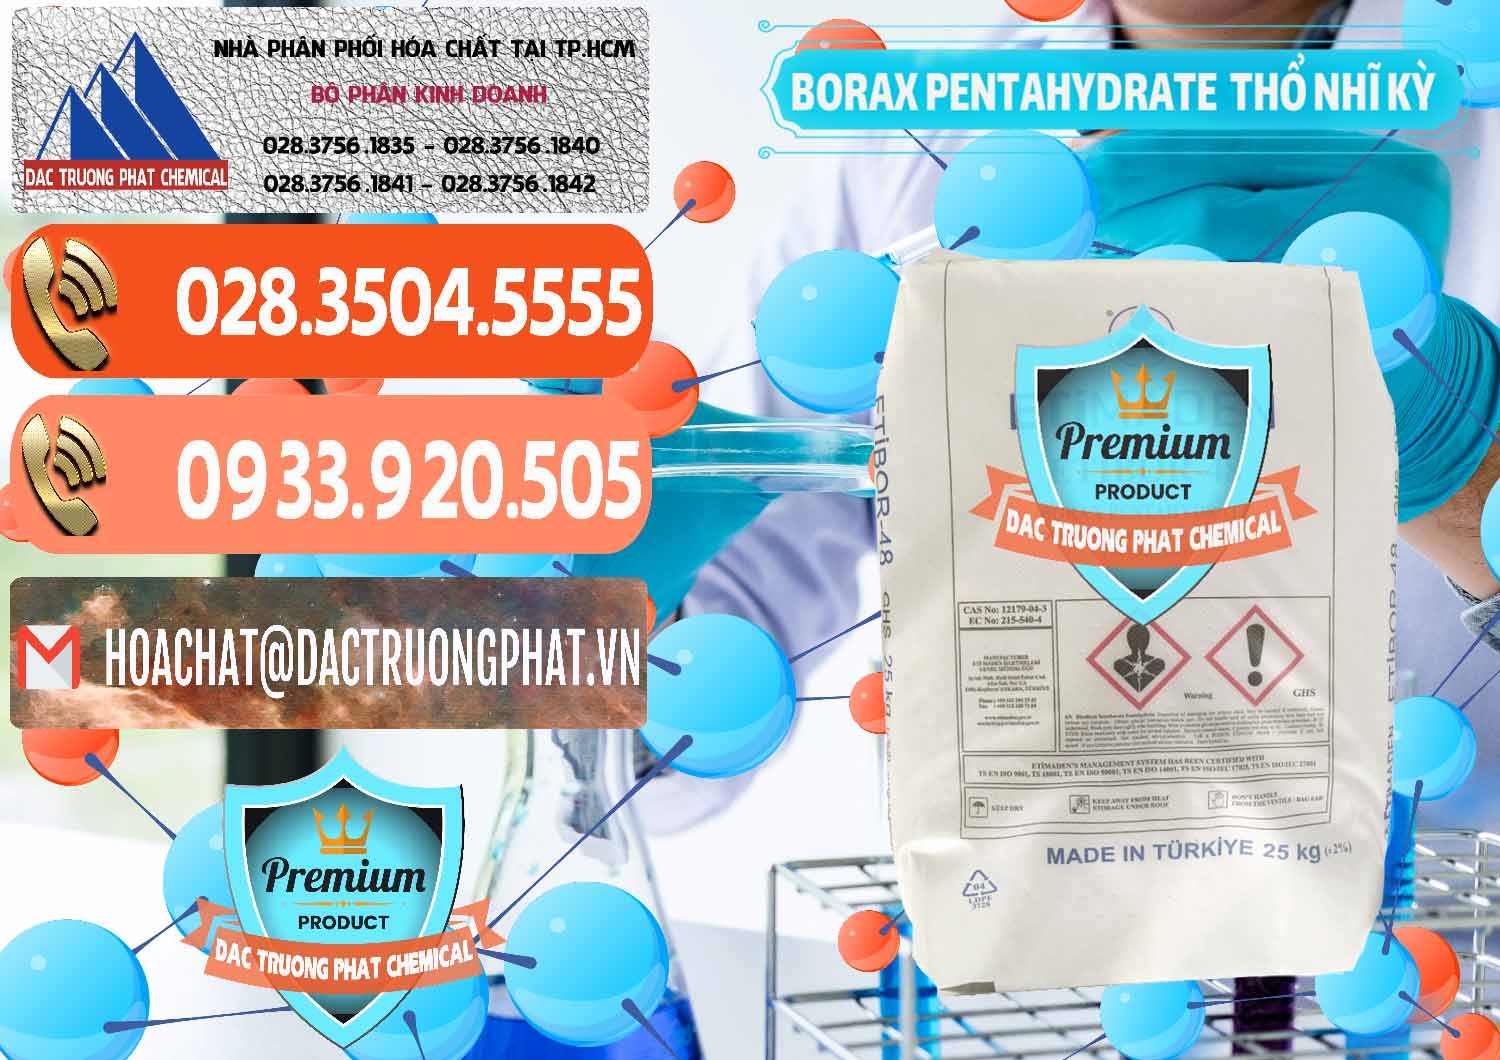 Cung cấp & bán Borax Pentahydrate Thổ Nhĩ Kỳ Turkey - 0431 - Cty chuyên kinh doanh và cung cấp hóa chất tại TP.HCM - hoachatmientay.com